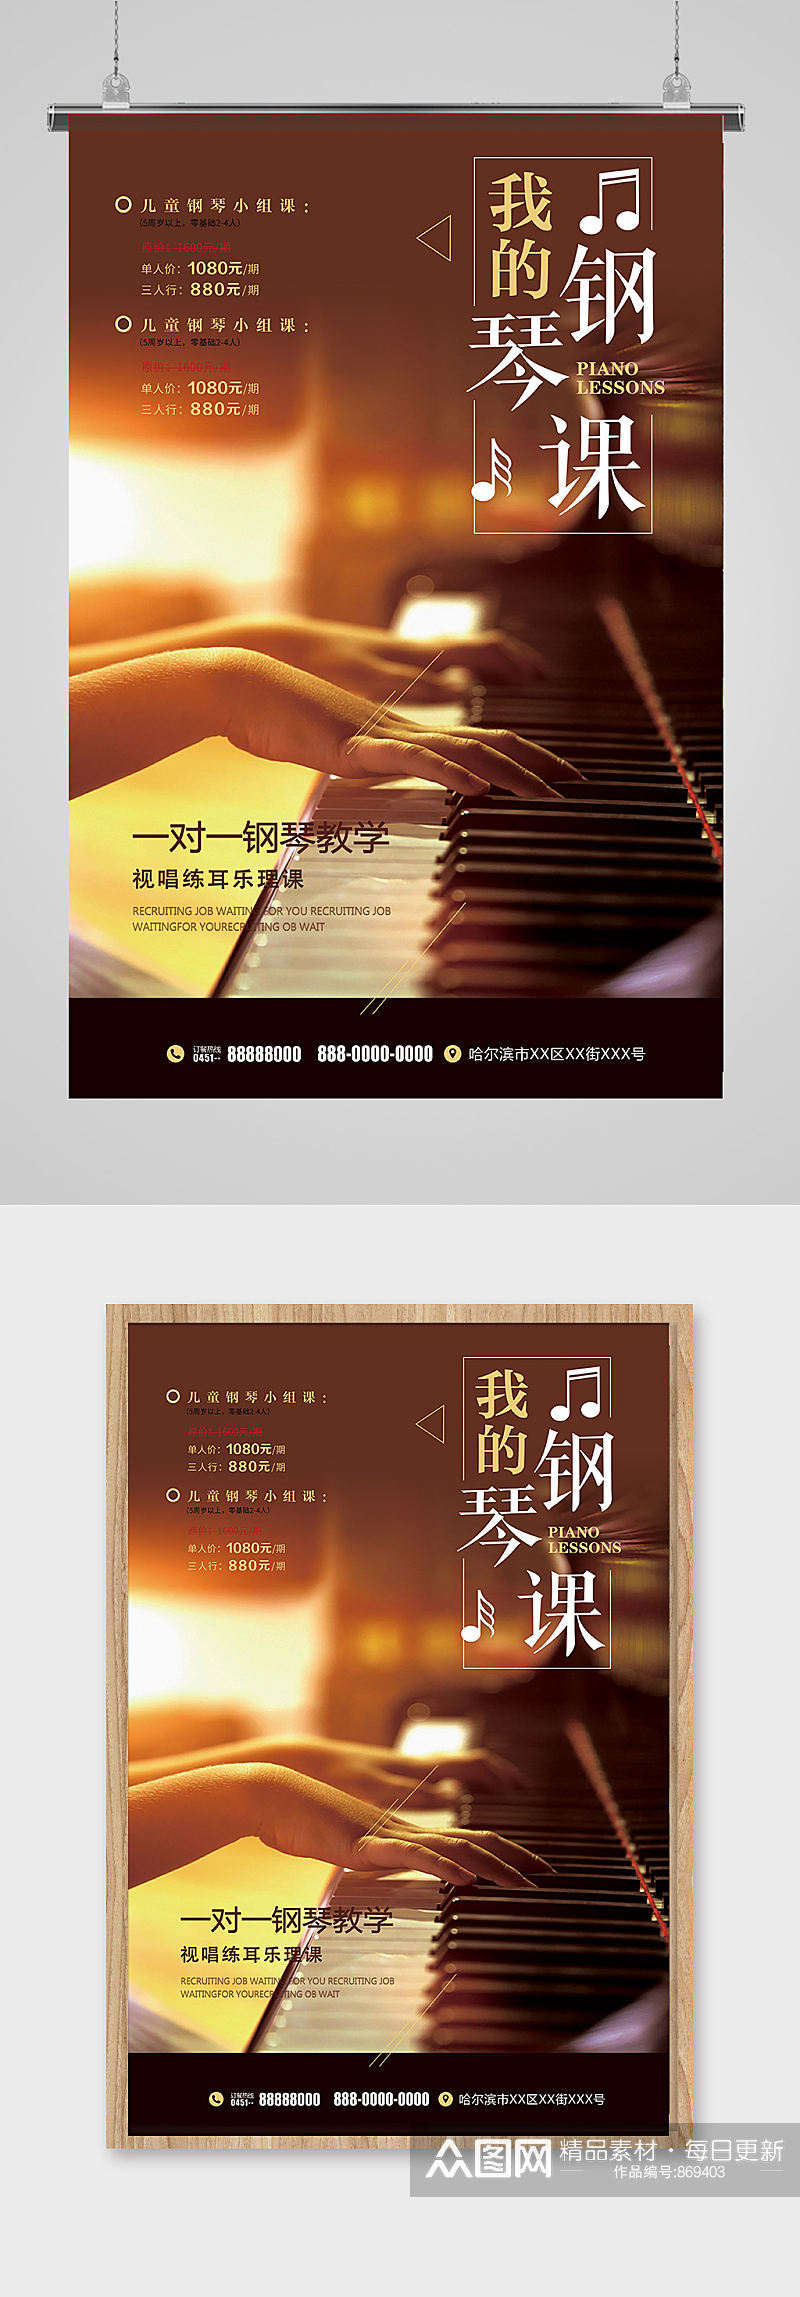 音乐钢琴版培训教育招生海报模板设计素材